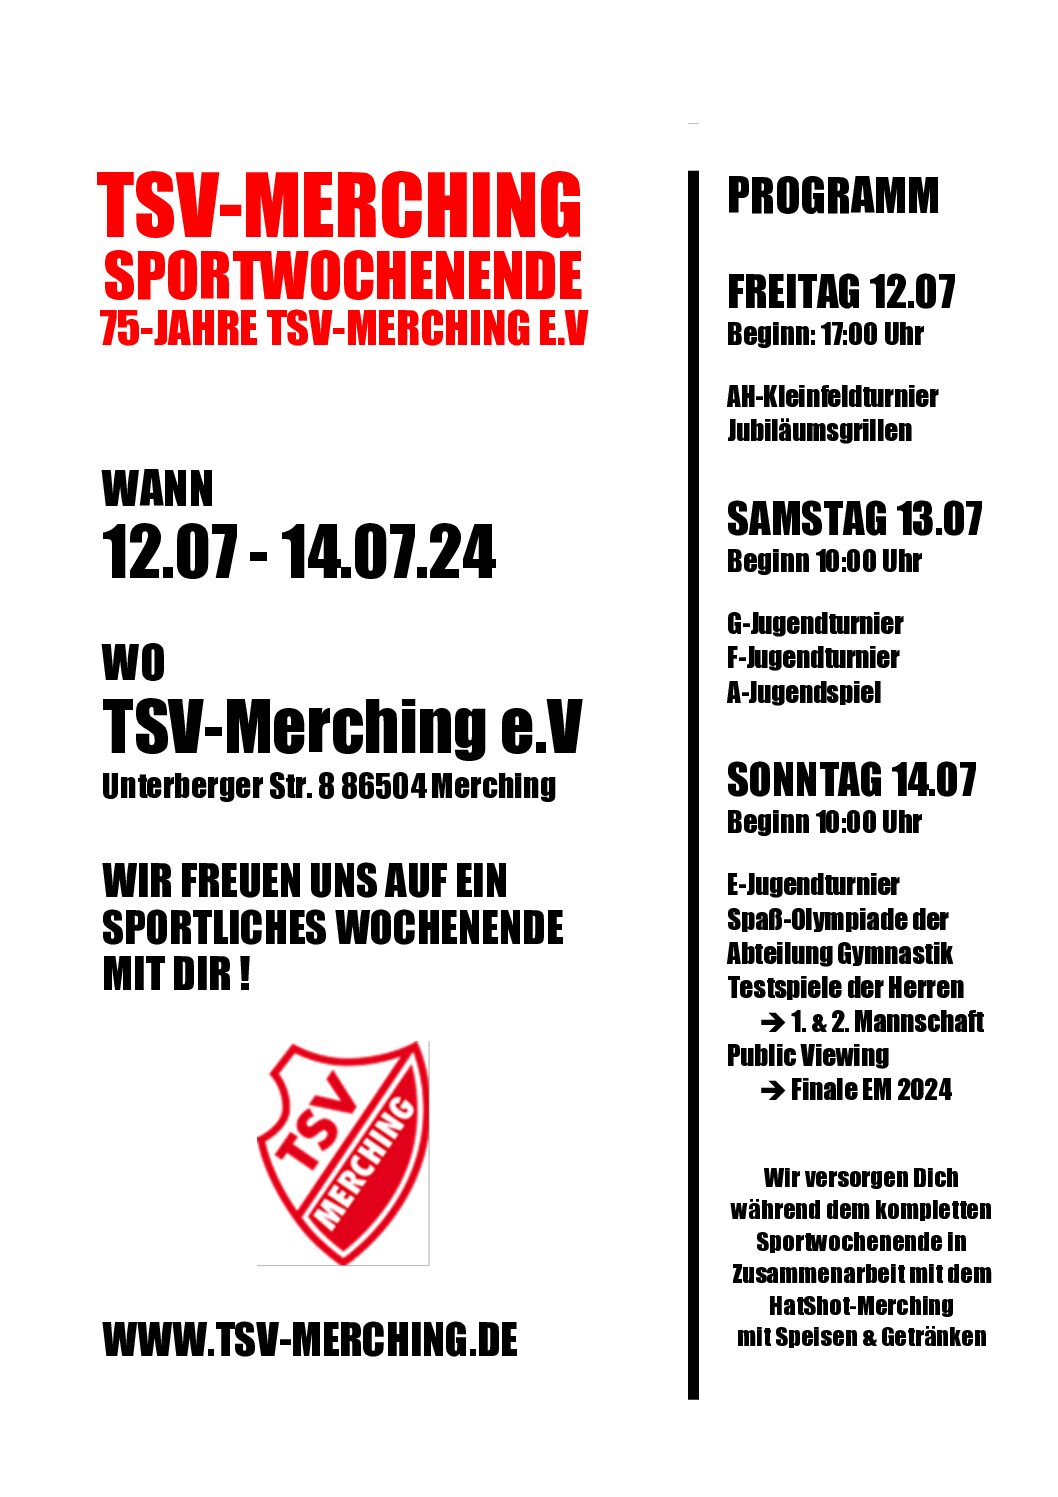 75-JAHRE TSV-MERCHING !                                  Sportwochenende vom 12.07.24 bis 14.07.24, komm‘ vorbei und feiere mit uns unser 75. Jubiläum !